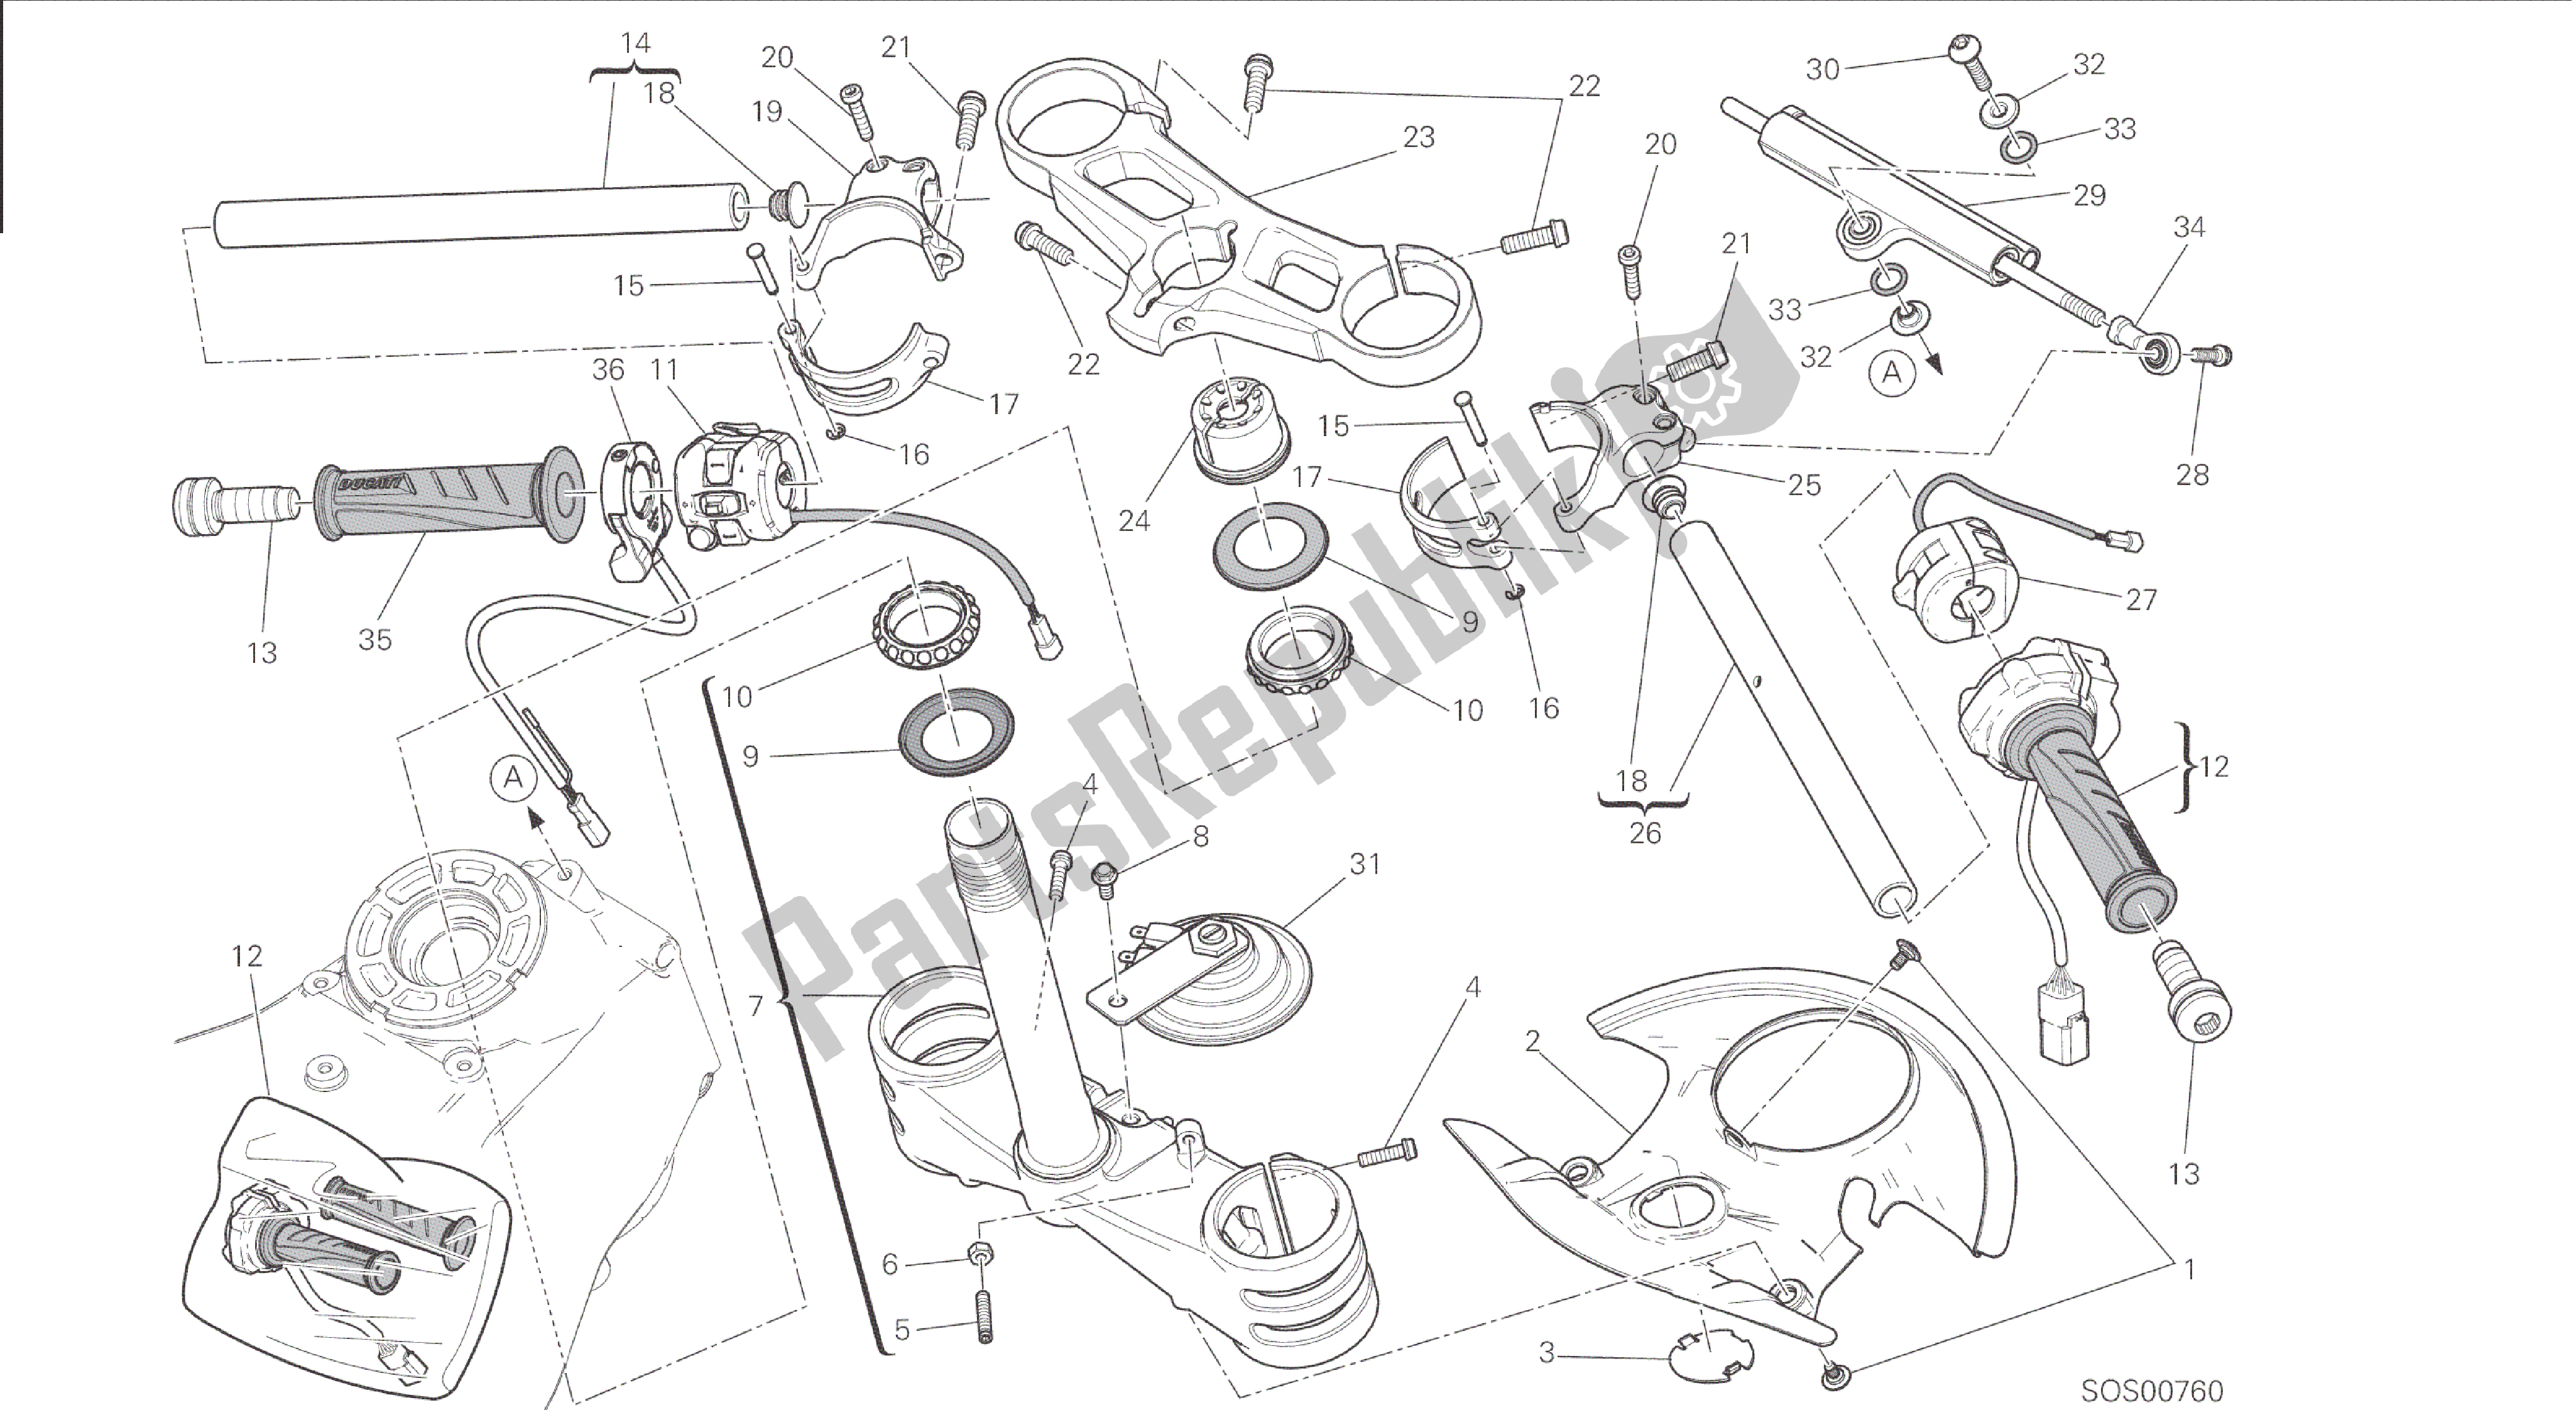 Todas las partes para Dibujo 021 - Semimanubri - Ammortizzatore Di Sterzo [mod: 1199r; Xst: Marco De Grupo Aus, Eur, Fra, Jap, Twn] de Ducati Panigale 1198 2015